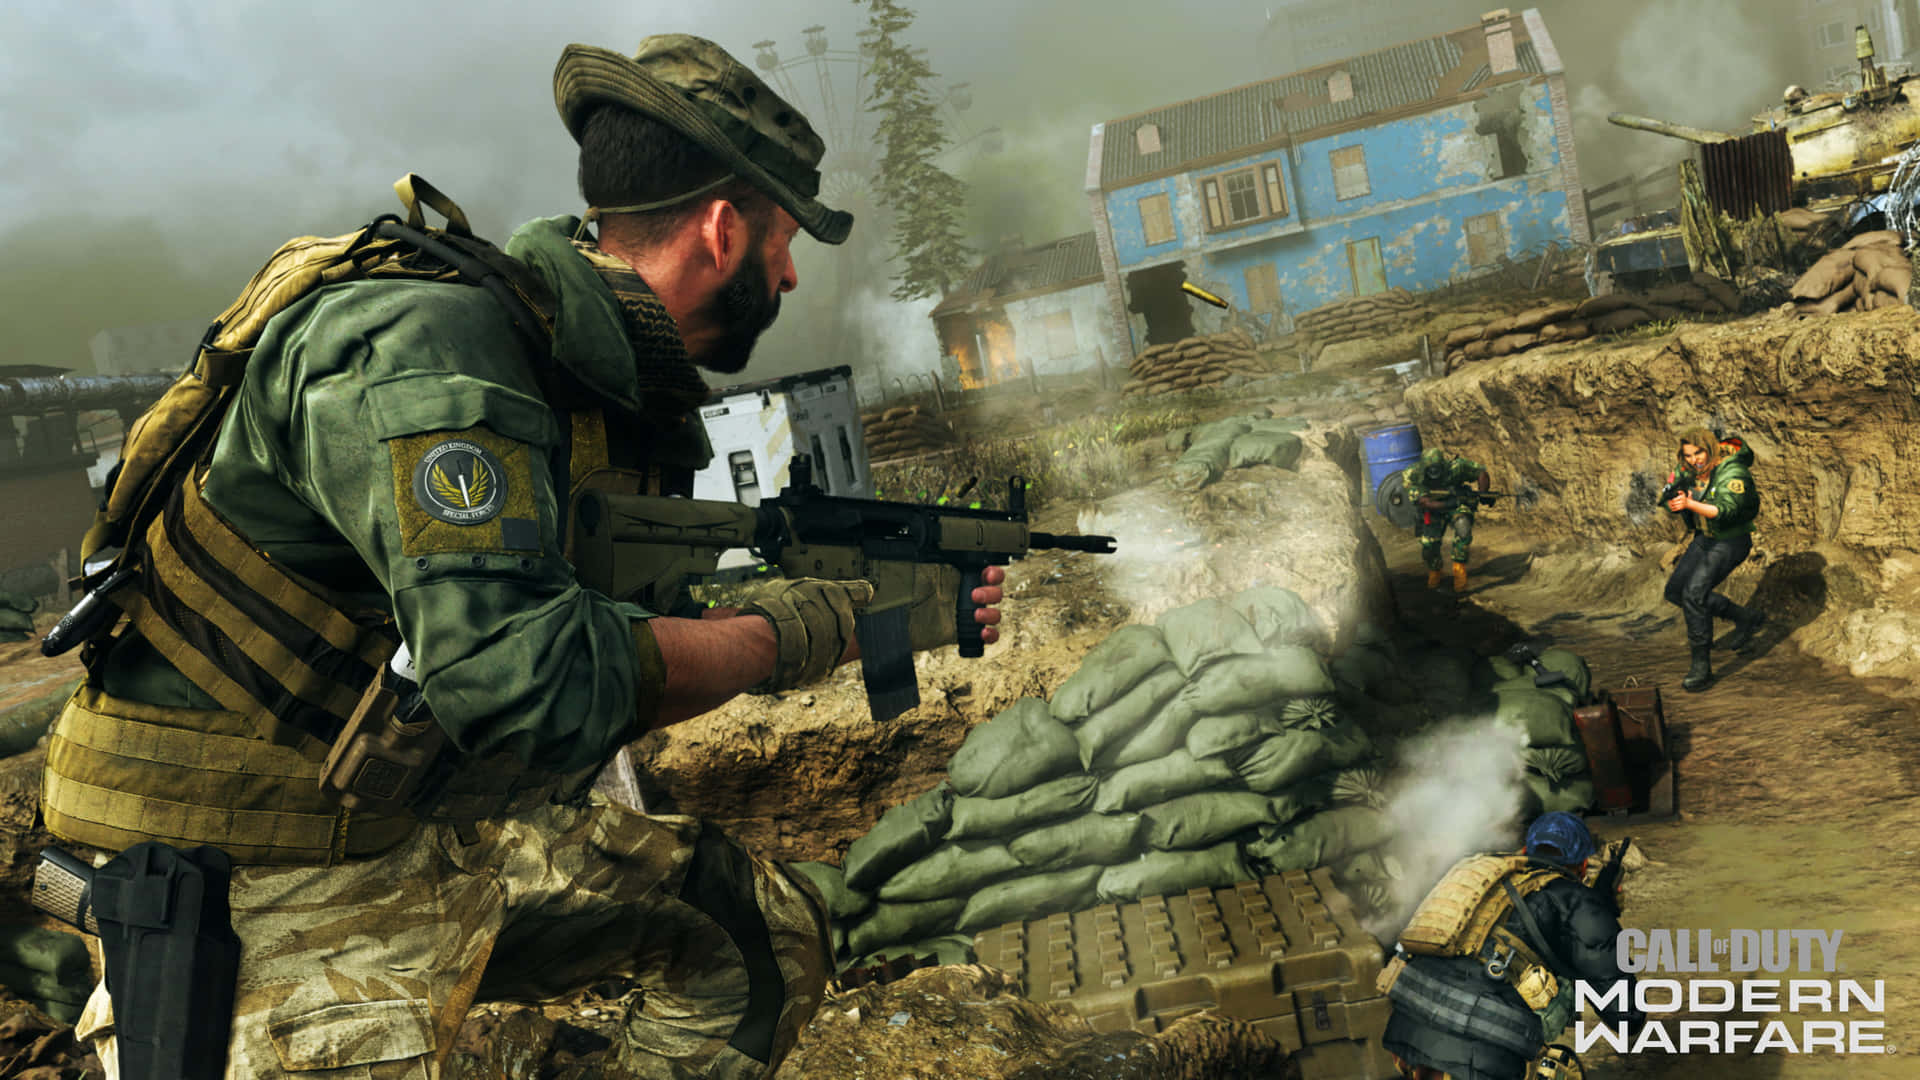 Fondode Pantalla De Call Of Duty Modern Warfare En 4k, Soldados Luchando En Los Barracones.